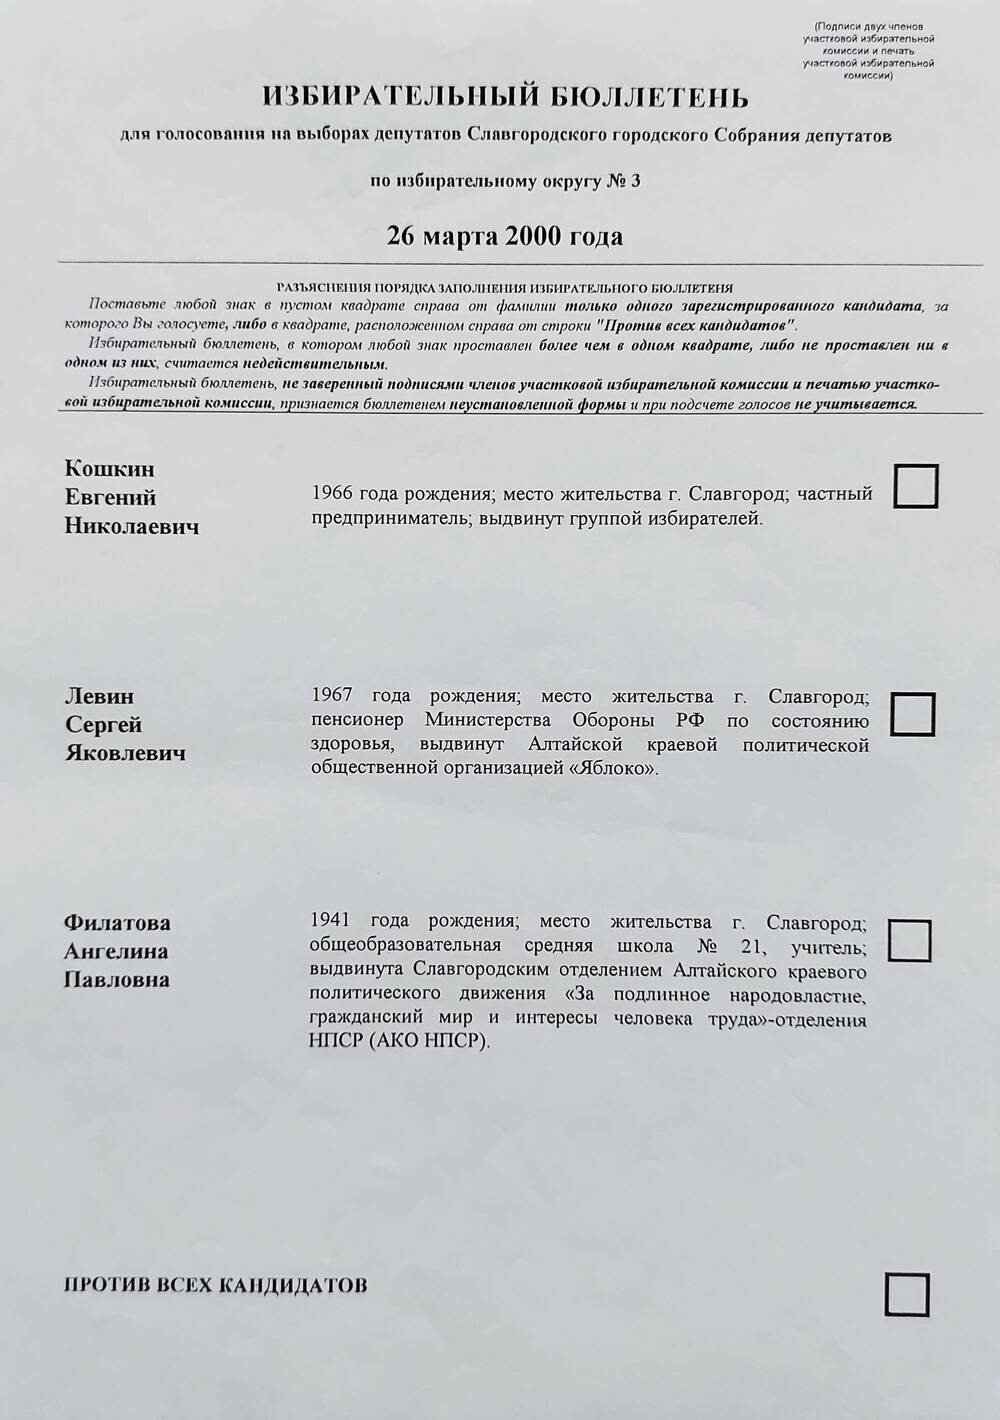 Бюллетень избирательный для голосования на выборах депутатов Славгородского городского Собрания депутатов по избирательному округу № 3 26 марта 2000 года.